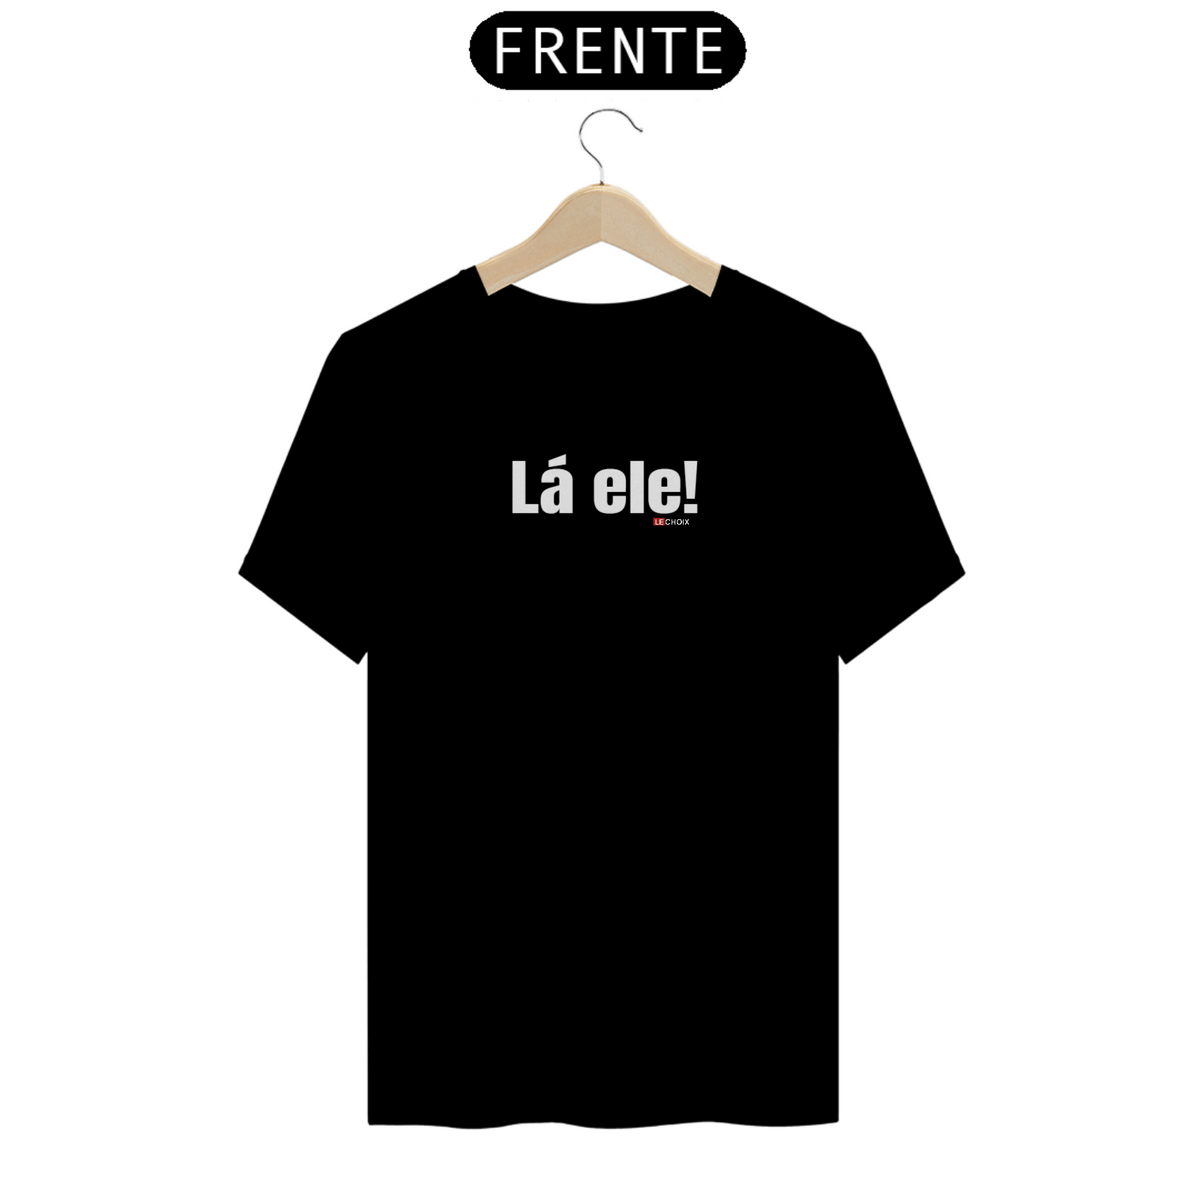 Nome do produto: Camiseta preta unissex 